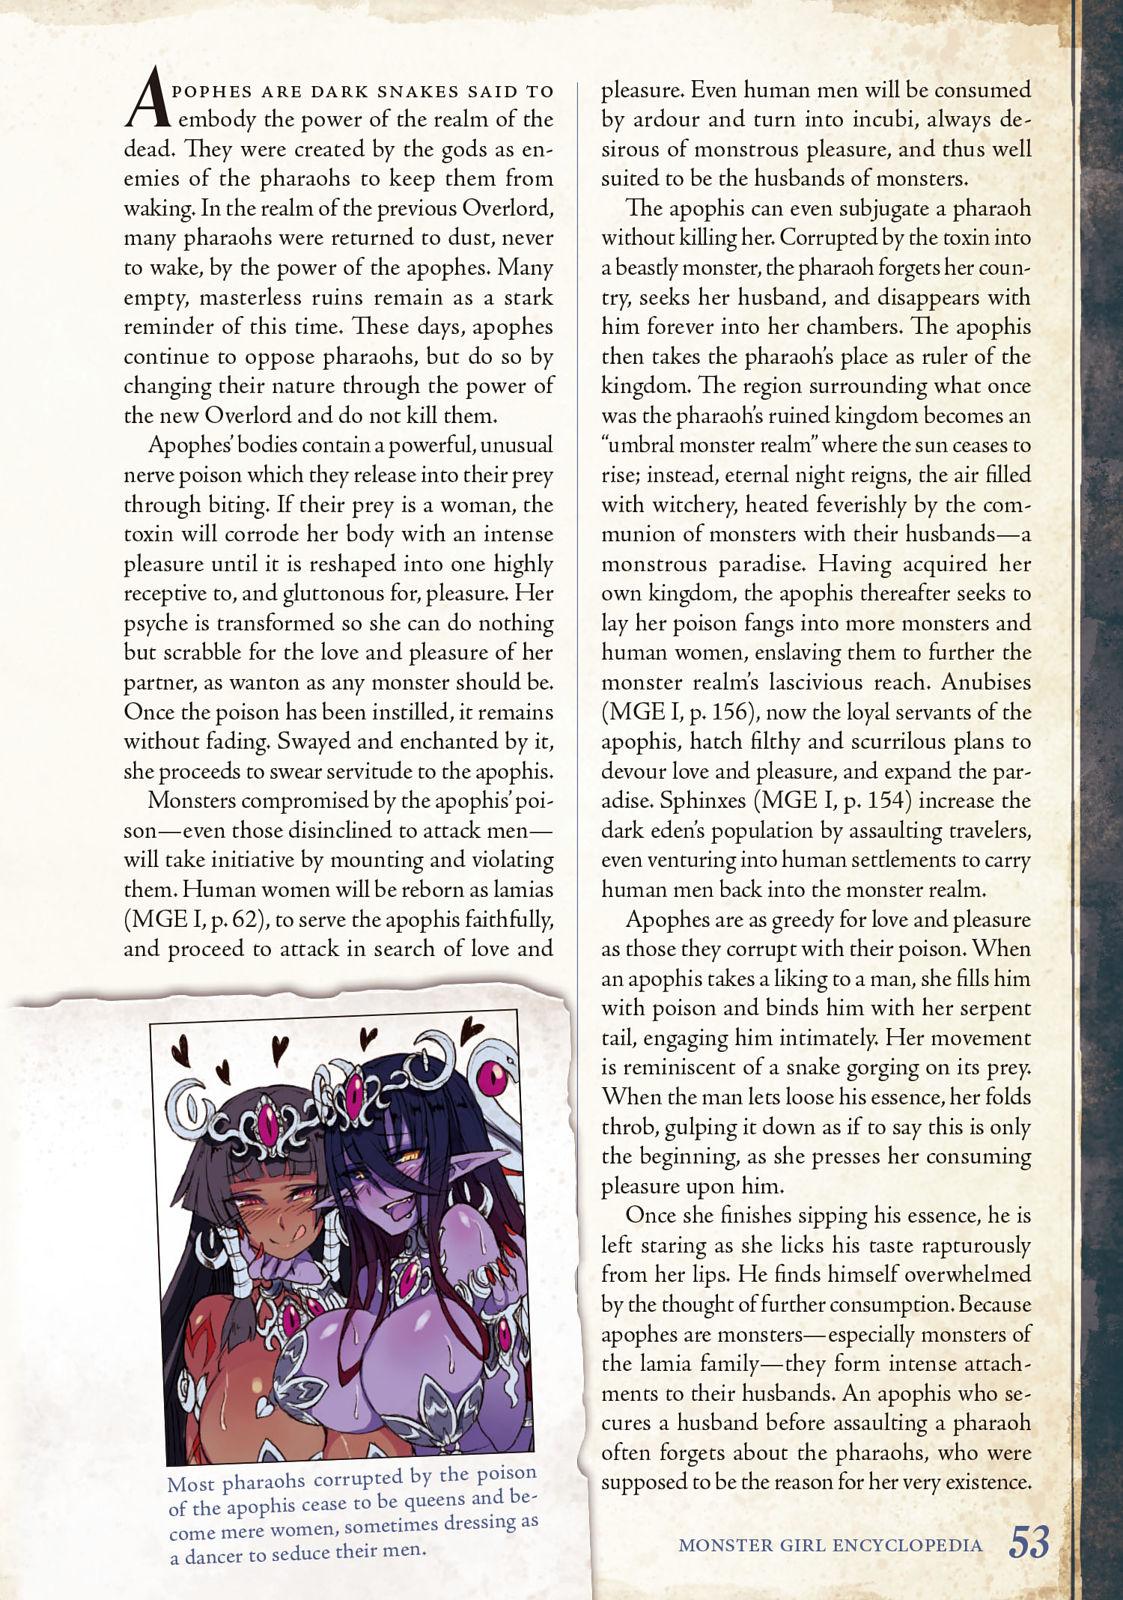 Monster Girl Encyclopedia Vol. 2 53